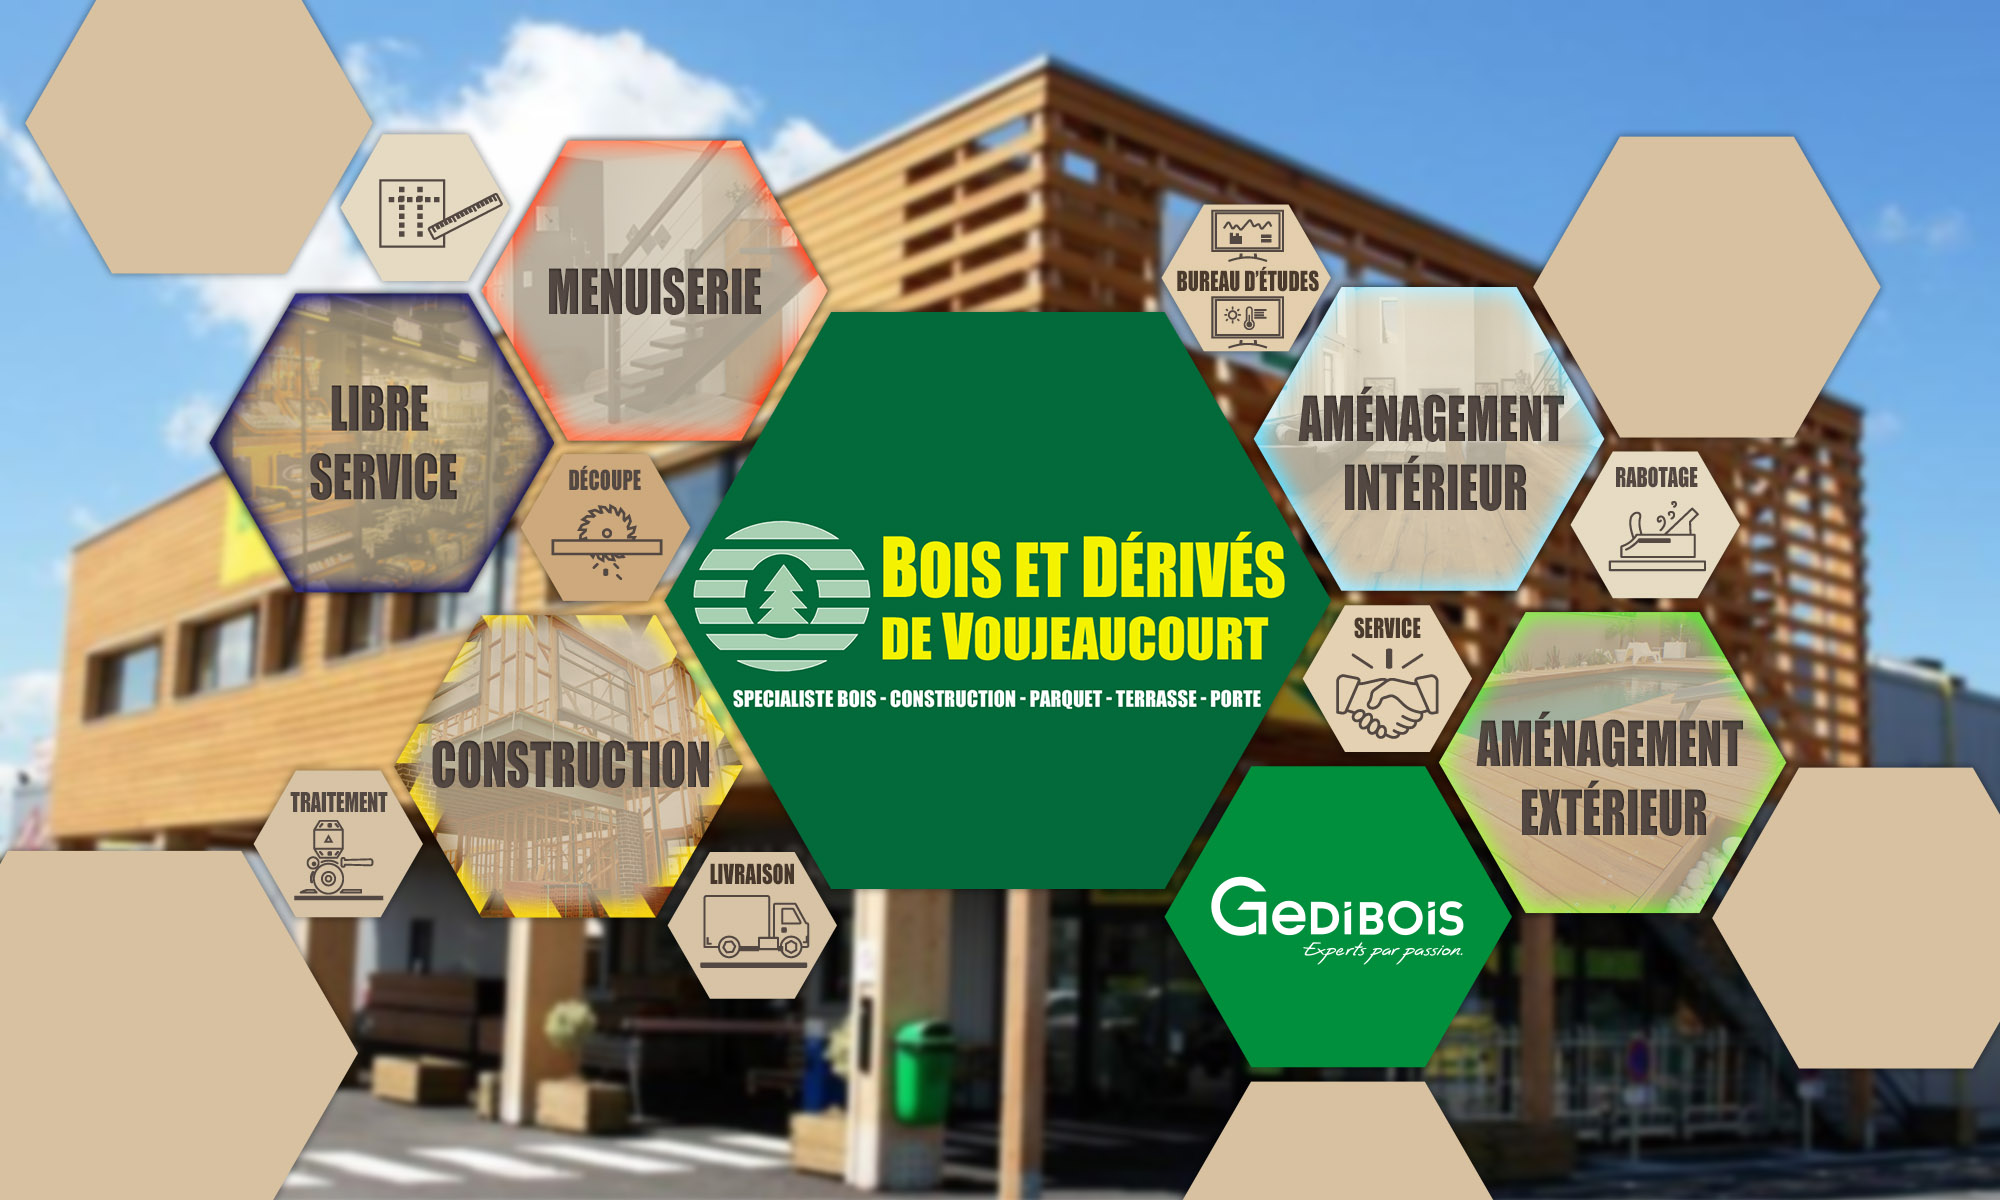 bois et derives de voujeaucourt logo gedibois